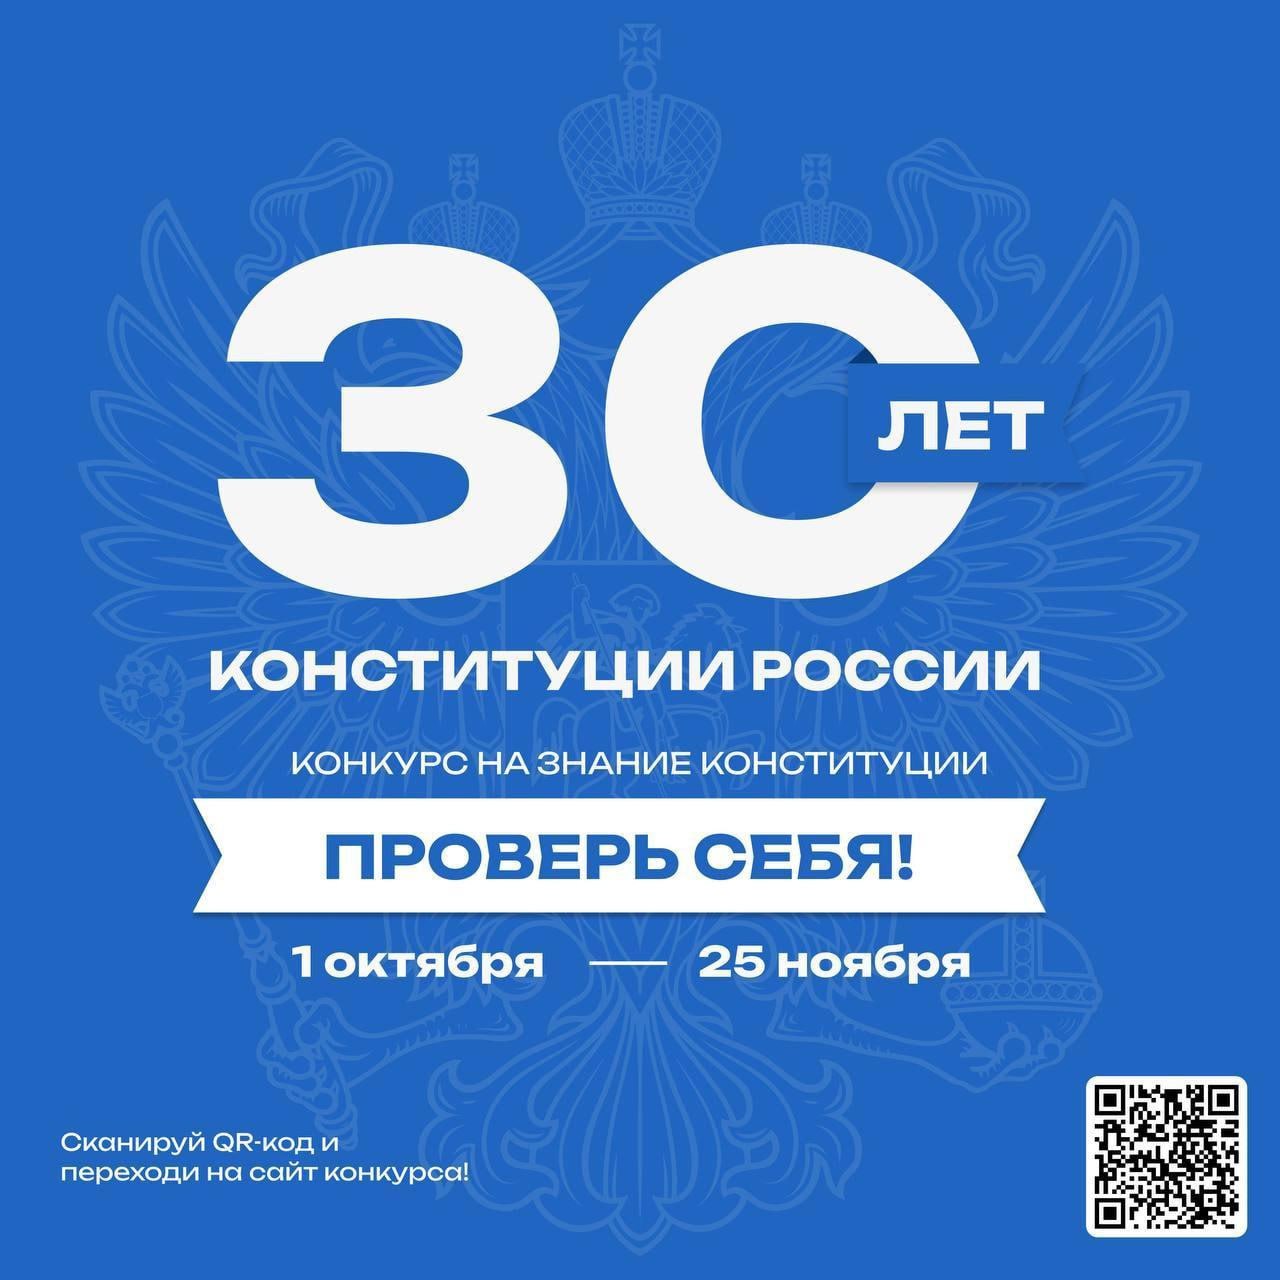 30-летие принятия главного закона страны – Конституции РФ.